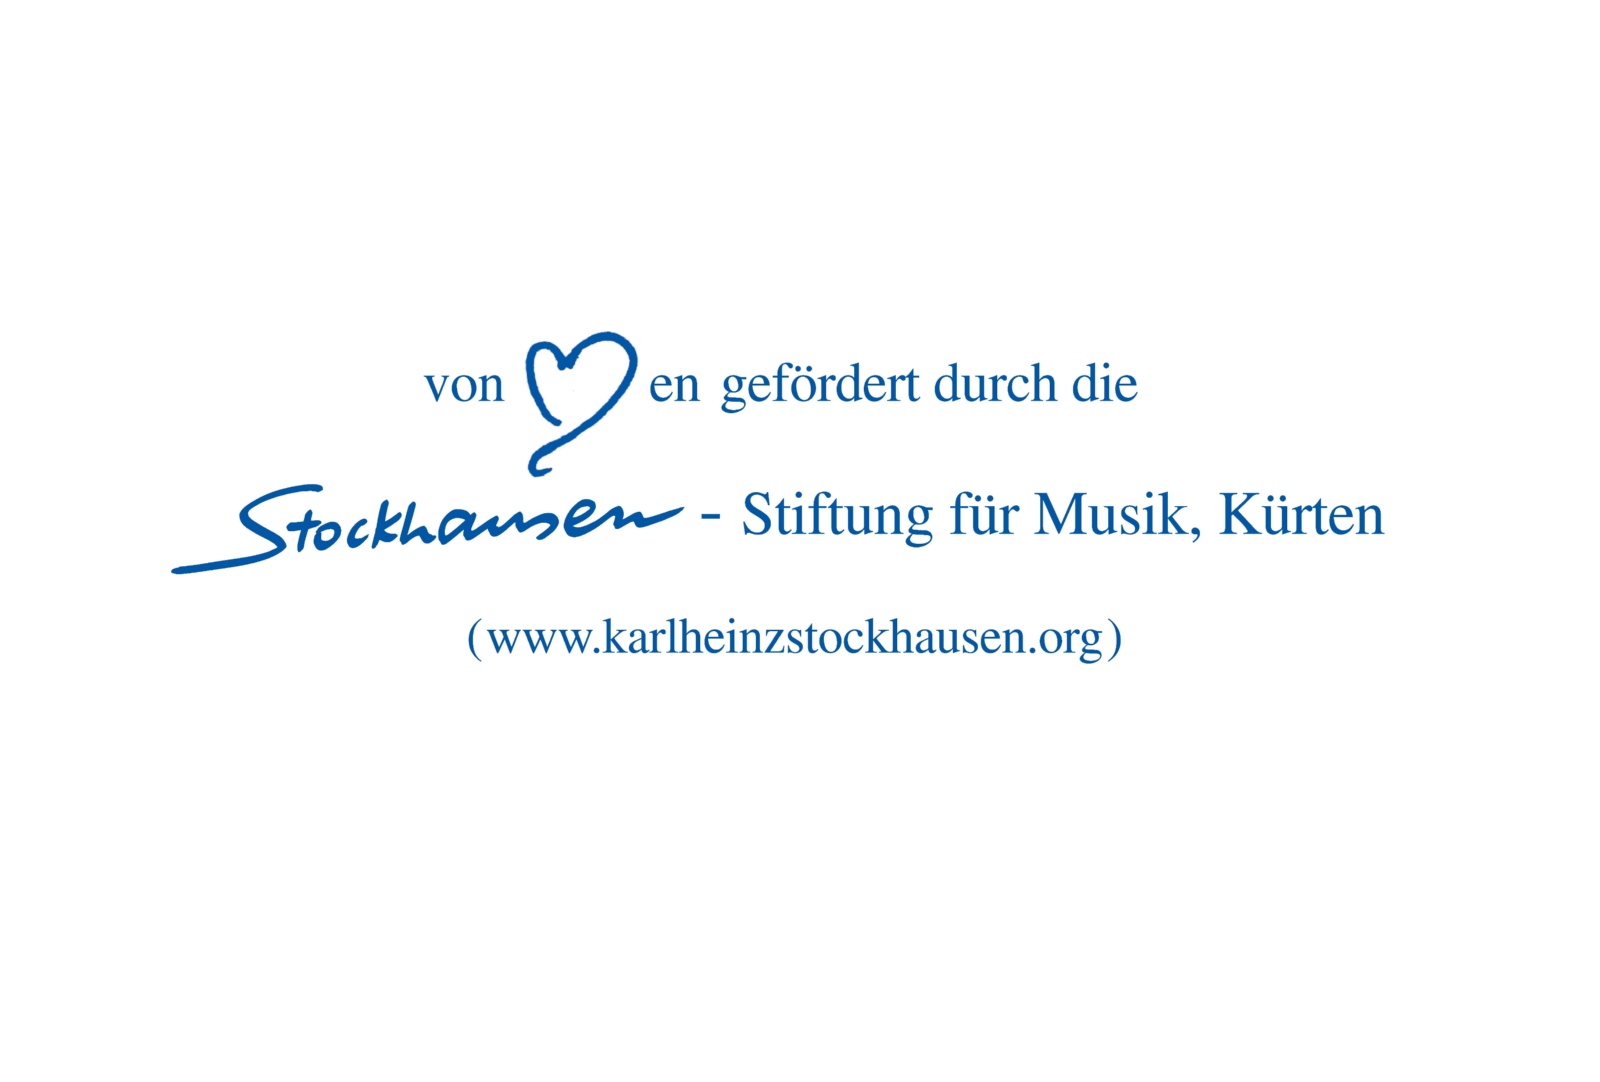 Logo Stockhausen (c) Stockhausen-Stiftung für Musik